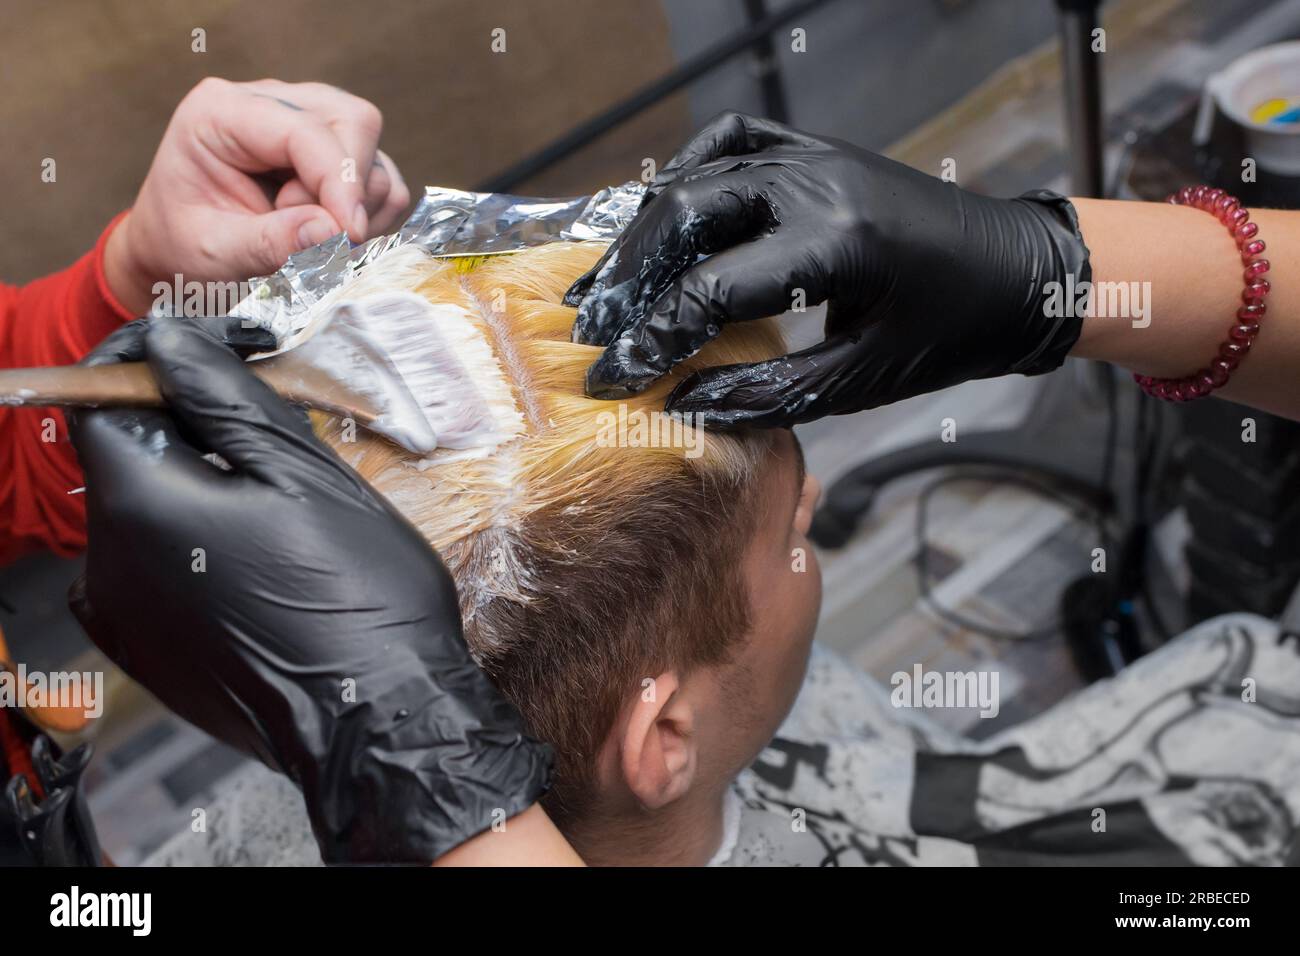 Hände einer Person in Handschuhen beim Färben von Männerhaaren mit einer Bürste bei der Arbeit in einem Friseursalon oder Friseur. Stockfoto